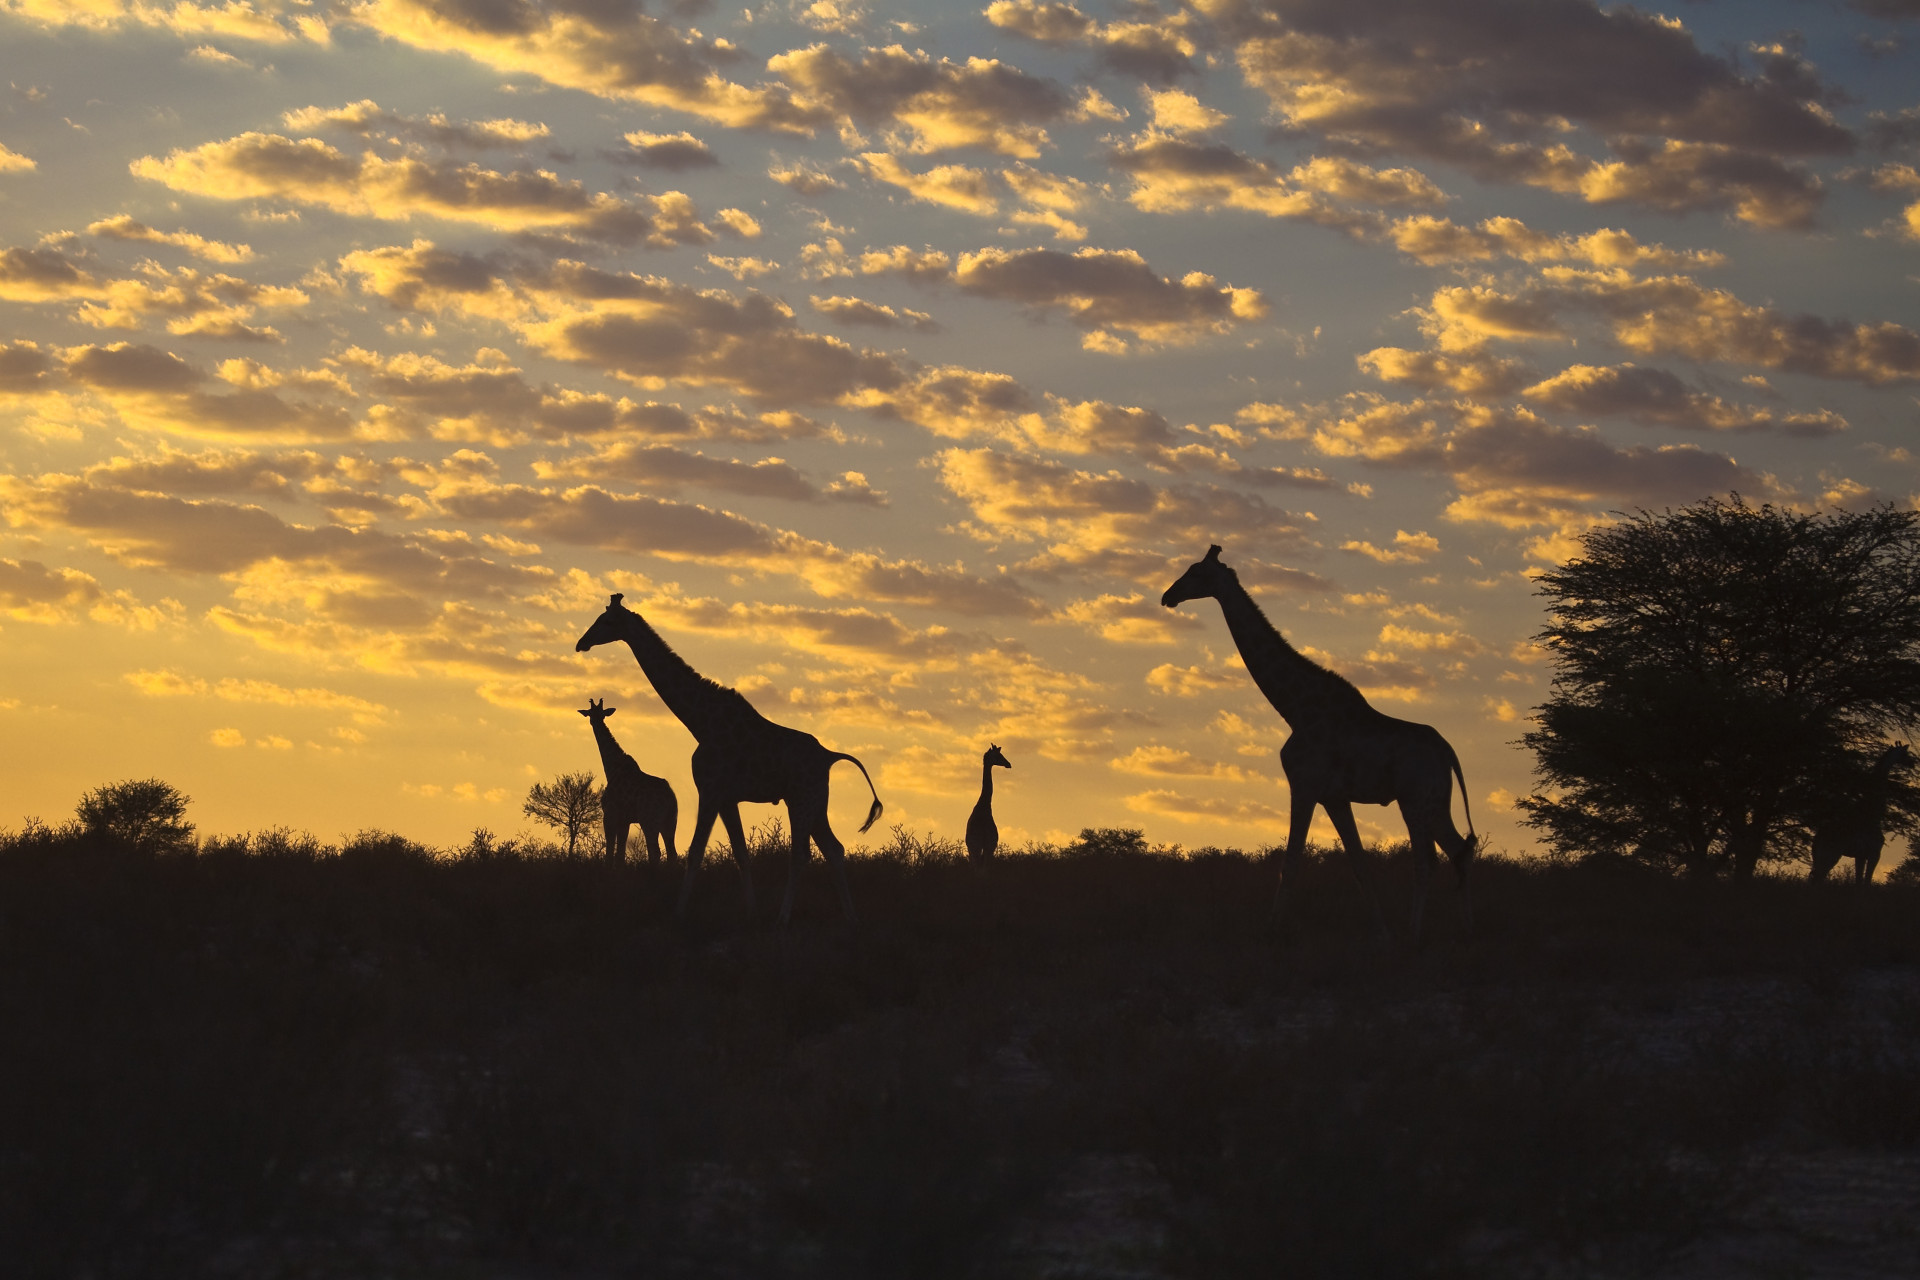 La grande réserve naturelle et zone de conservation de la faune a été fondée en 1931 et chevauche la frontière entre l’Afrique du Sud et le Botswana. Le parc abrite une faune riche et diversifiée, couvrant une superficie de 38 000 km 2 (14 672 km 2).<p><a href="https://www.msn.com/fr-fr/community/channel/vid-7xx8mnucu55yw63we9va2gwr7uihbxwc68fxqp25x6tg4ftibpra?cvid=94631541bc0f4f89bfd59158d696ad7e">Suivez-nous et accédez tous les jours à du contenu exclusif</a></p>